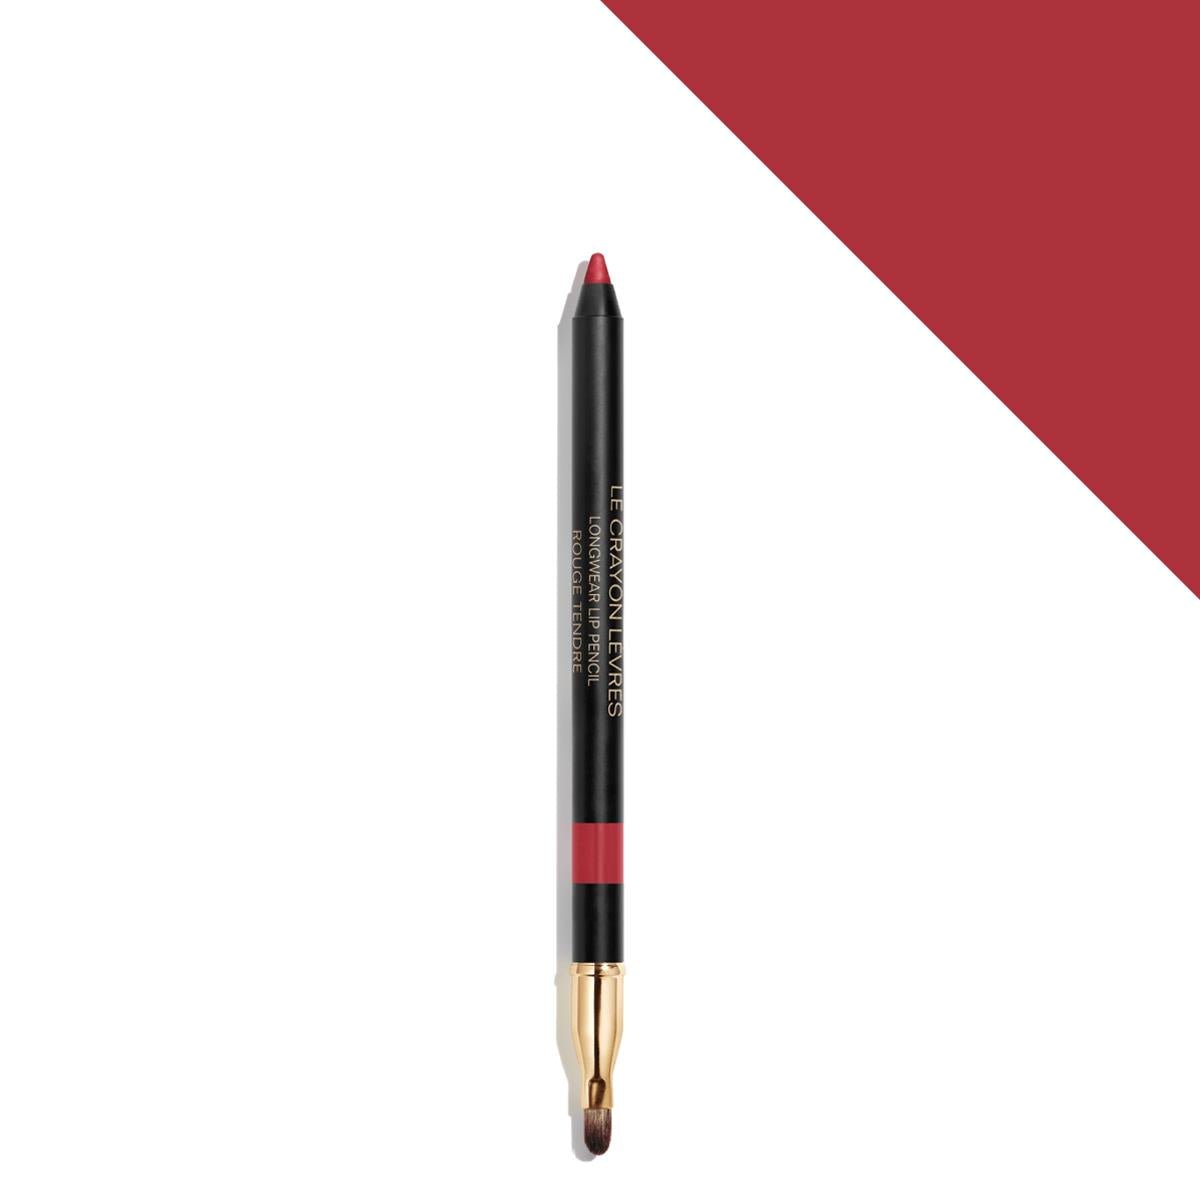  Chanel Le Crayon Levres 174 Rouge Tendre Longwear Lip